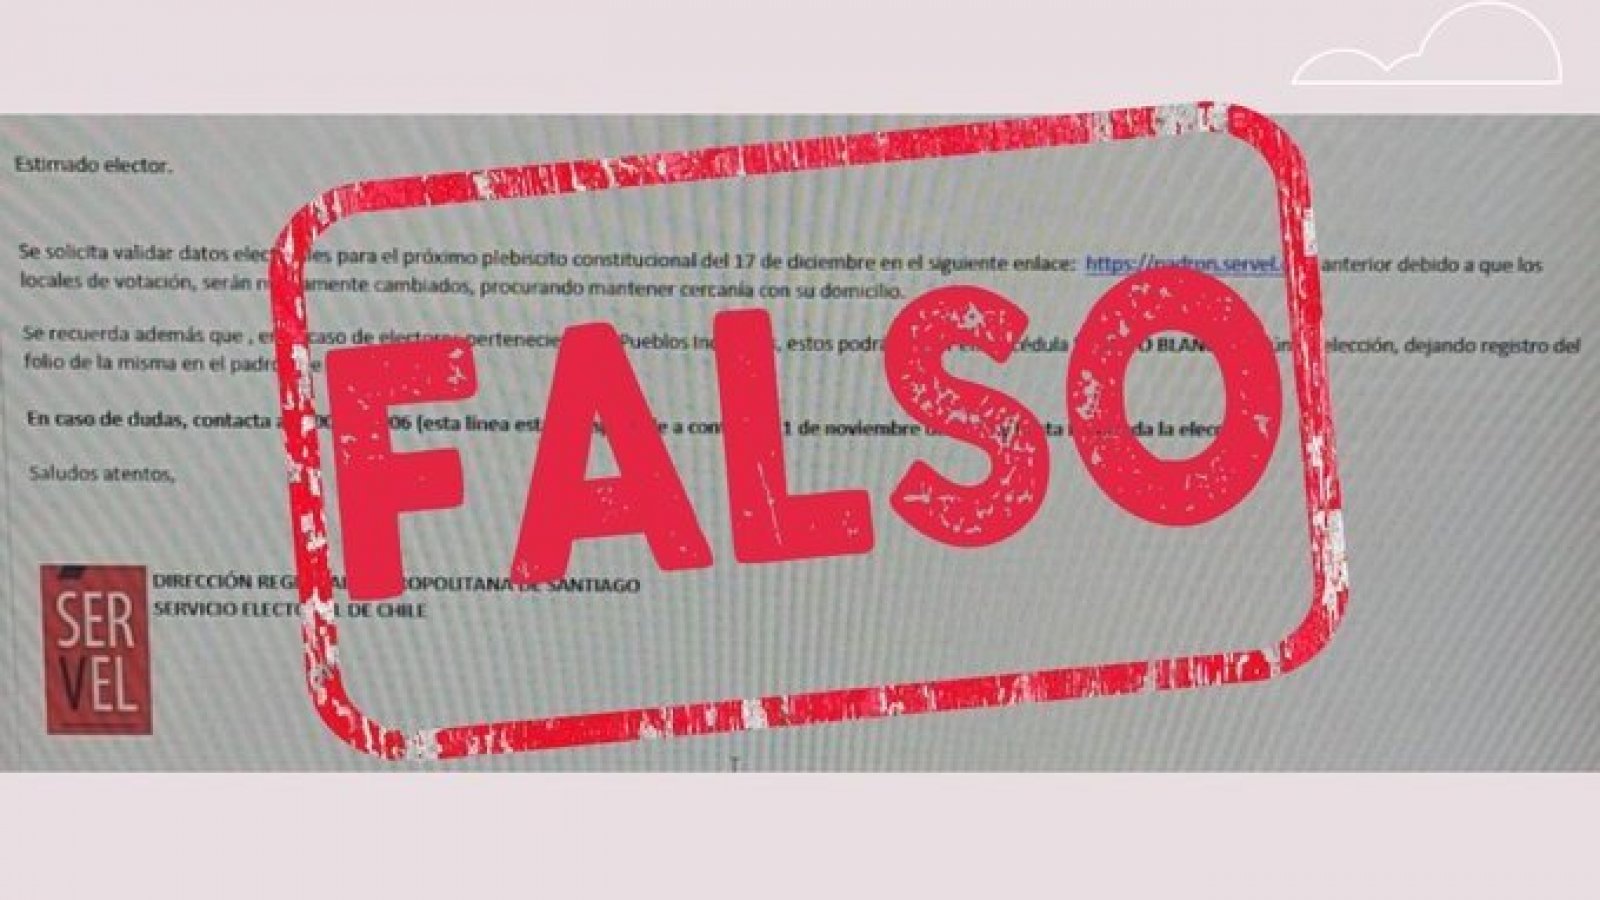 Servel emite alerta por correo falso que solicita cambio de datos electorales